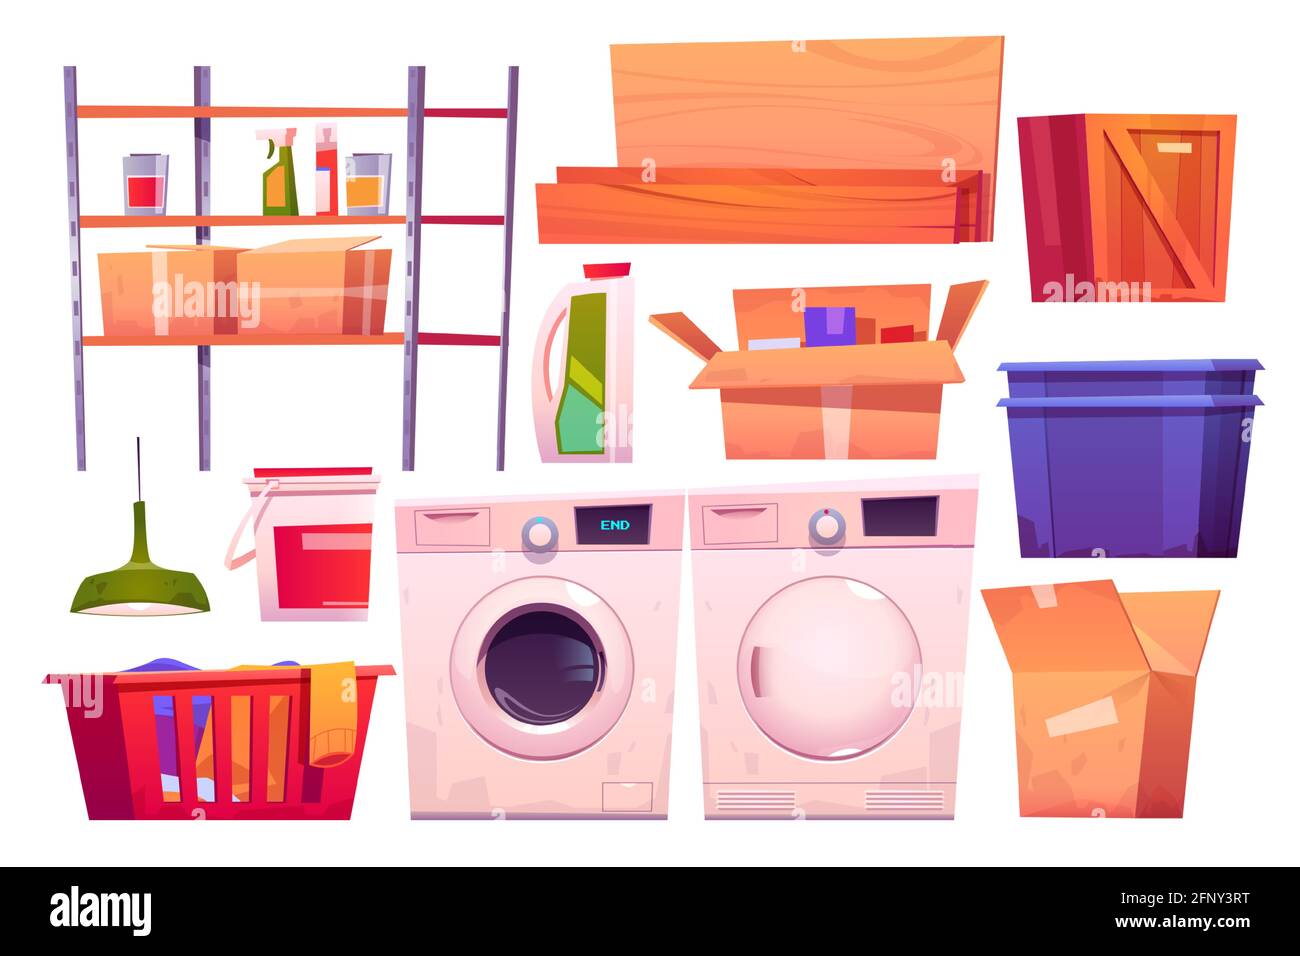 Equipo de lavandería para lavar y secar la ropa. Juego de dibujos animados vectoriales de lavadora y cesta detergentes. Cuarto de almacenaje con lavadero, cajas, estantes, tablas de madera